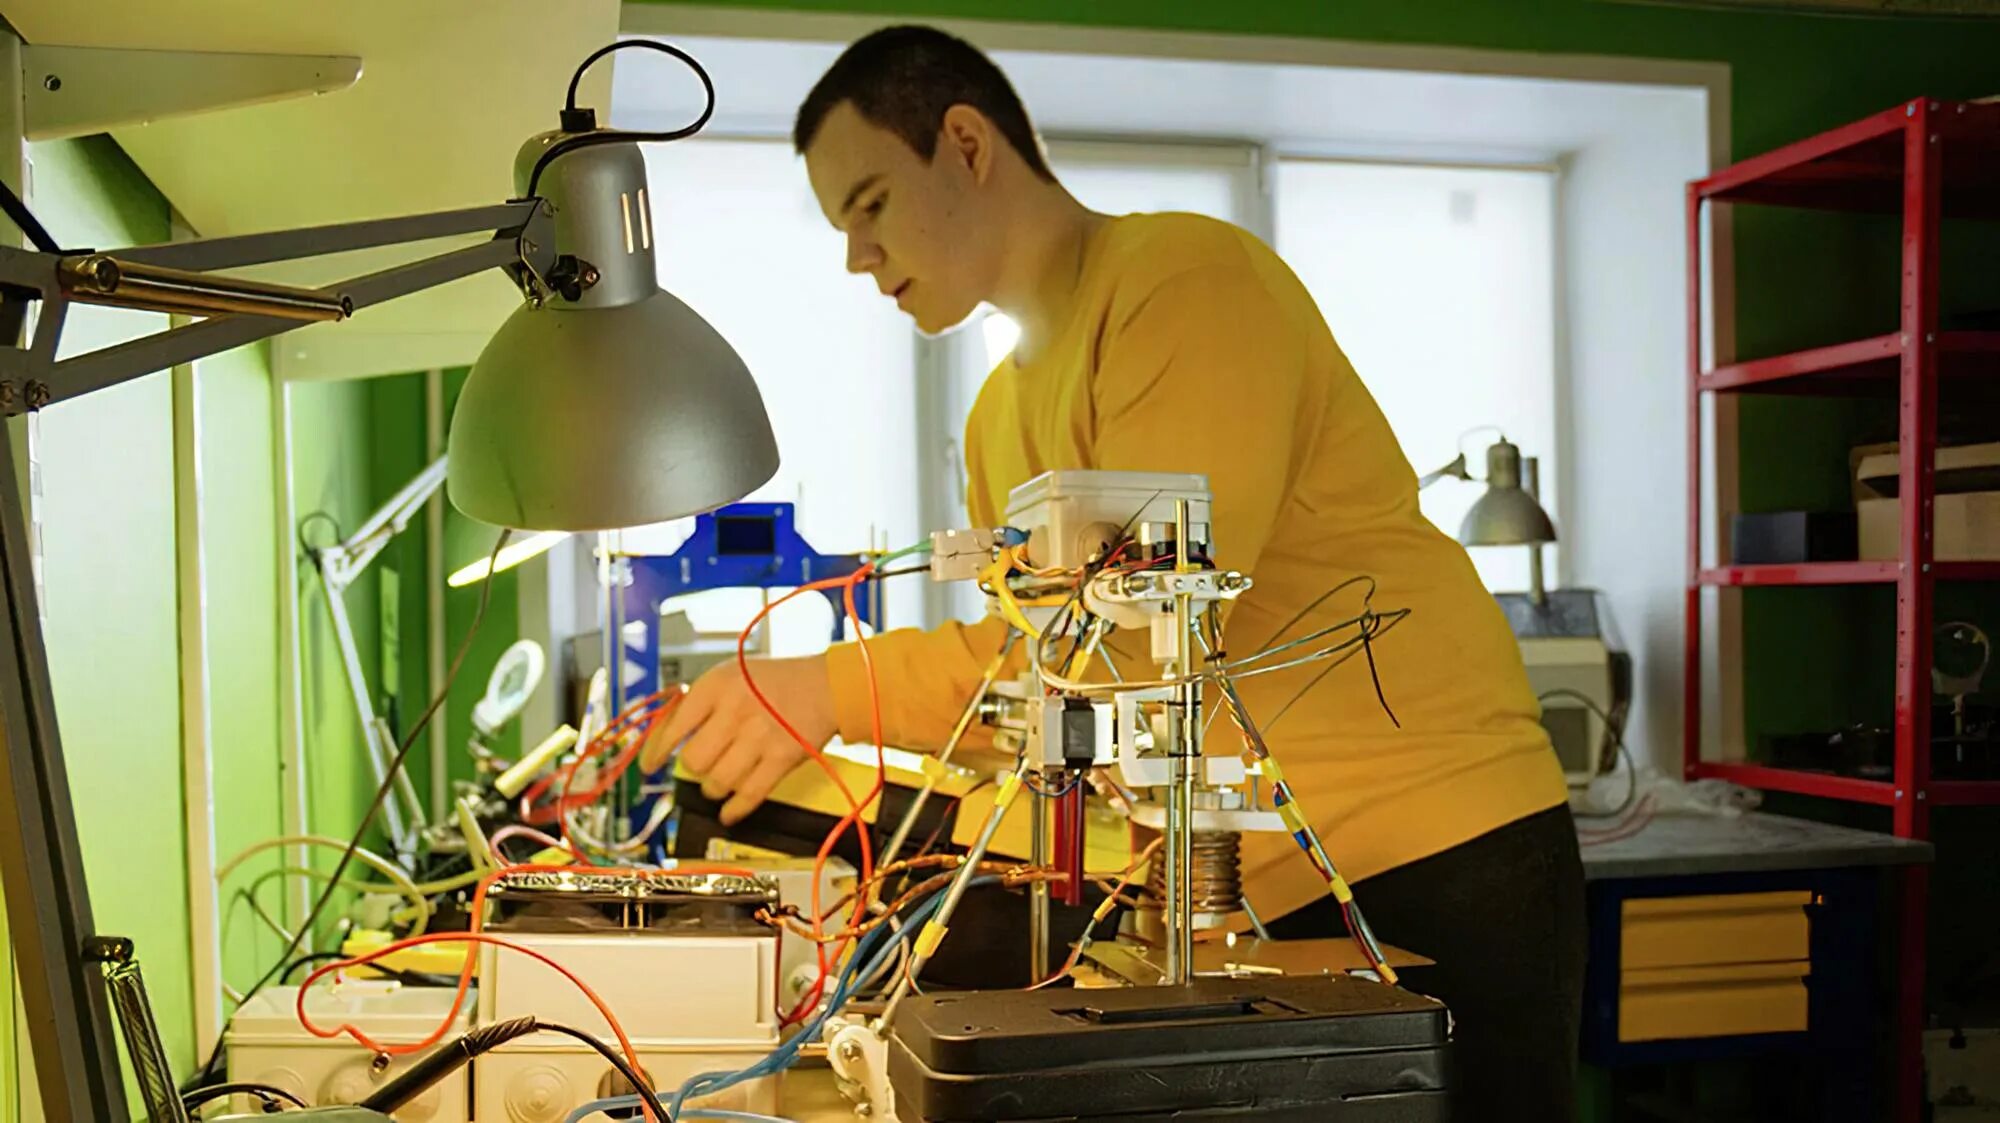 Какой из автономных роботов созданный французским изобретателем. 3д принтер в космической отрасли. Исследовательские роботы. Космический робот-повар. 3d-принтер космические исследования.